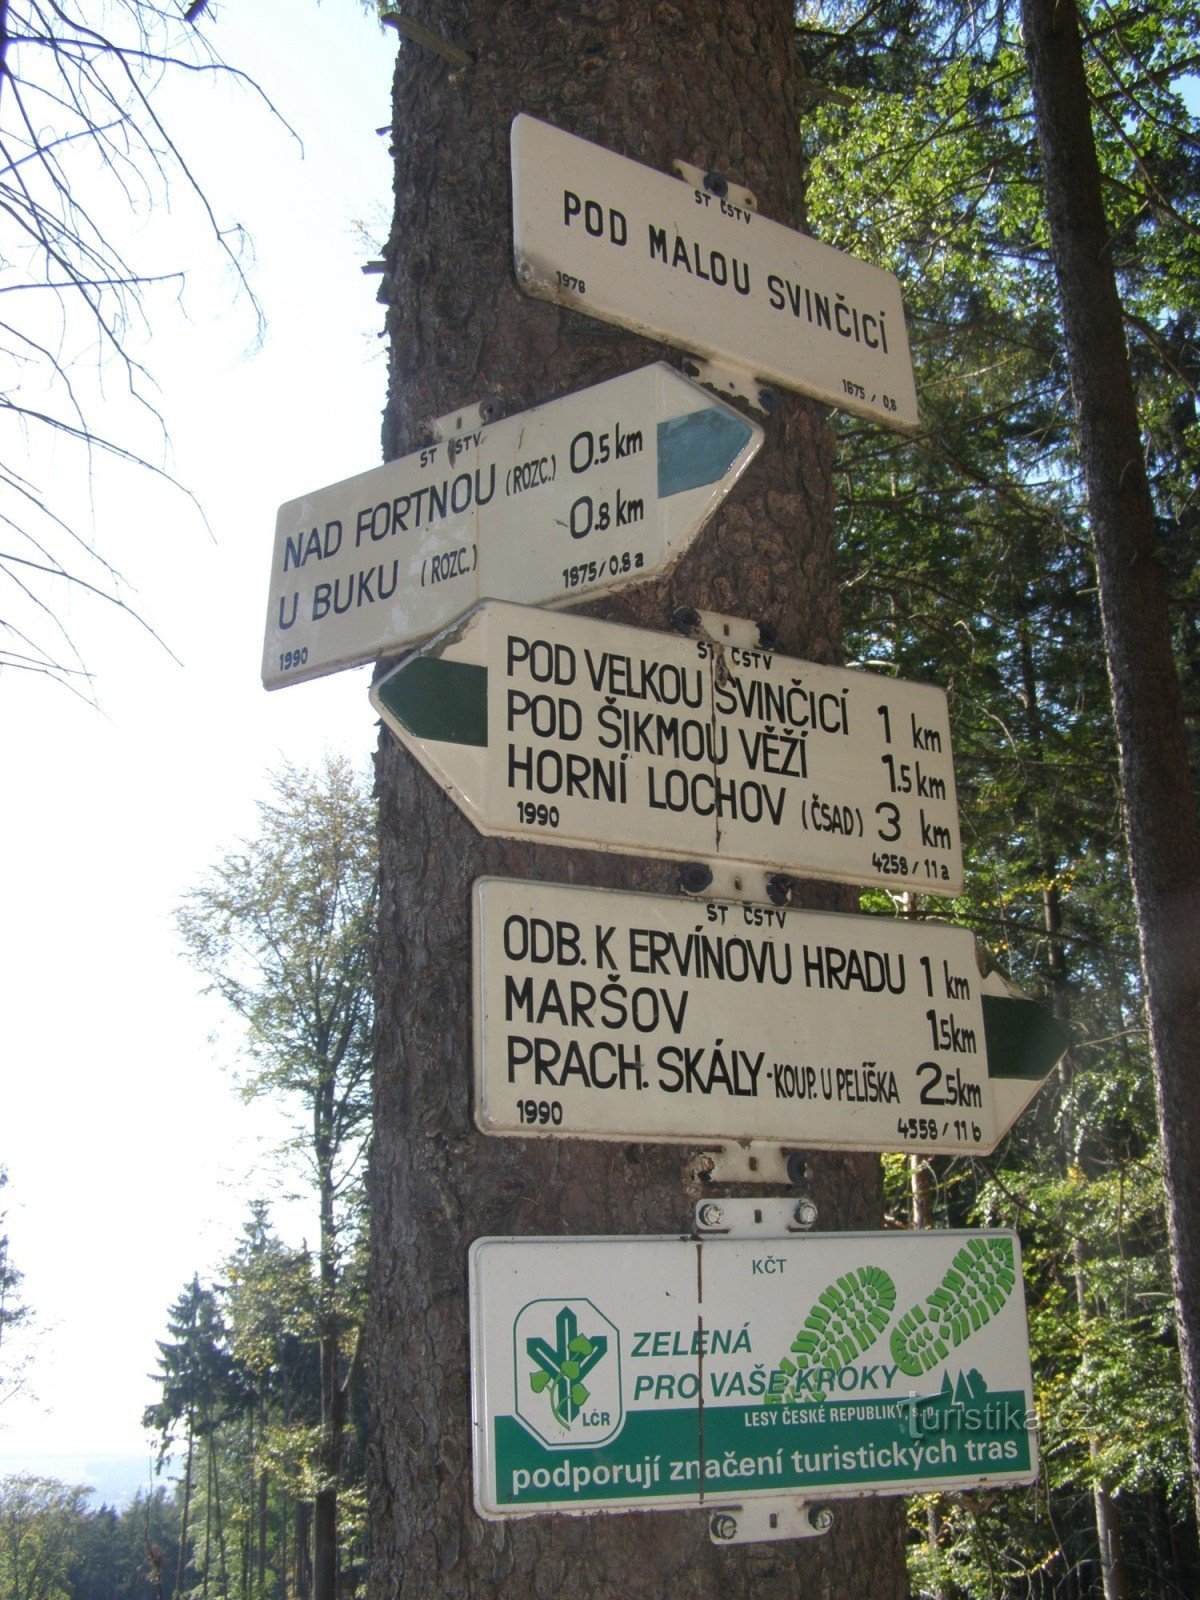 Prachovské skály - Malou Svinčicí の下の観光交差点